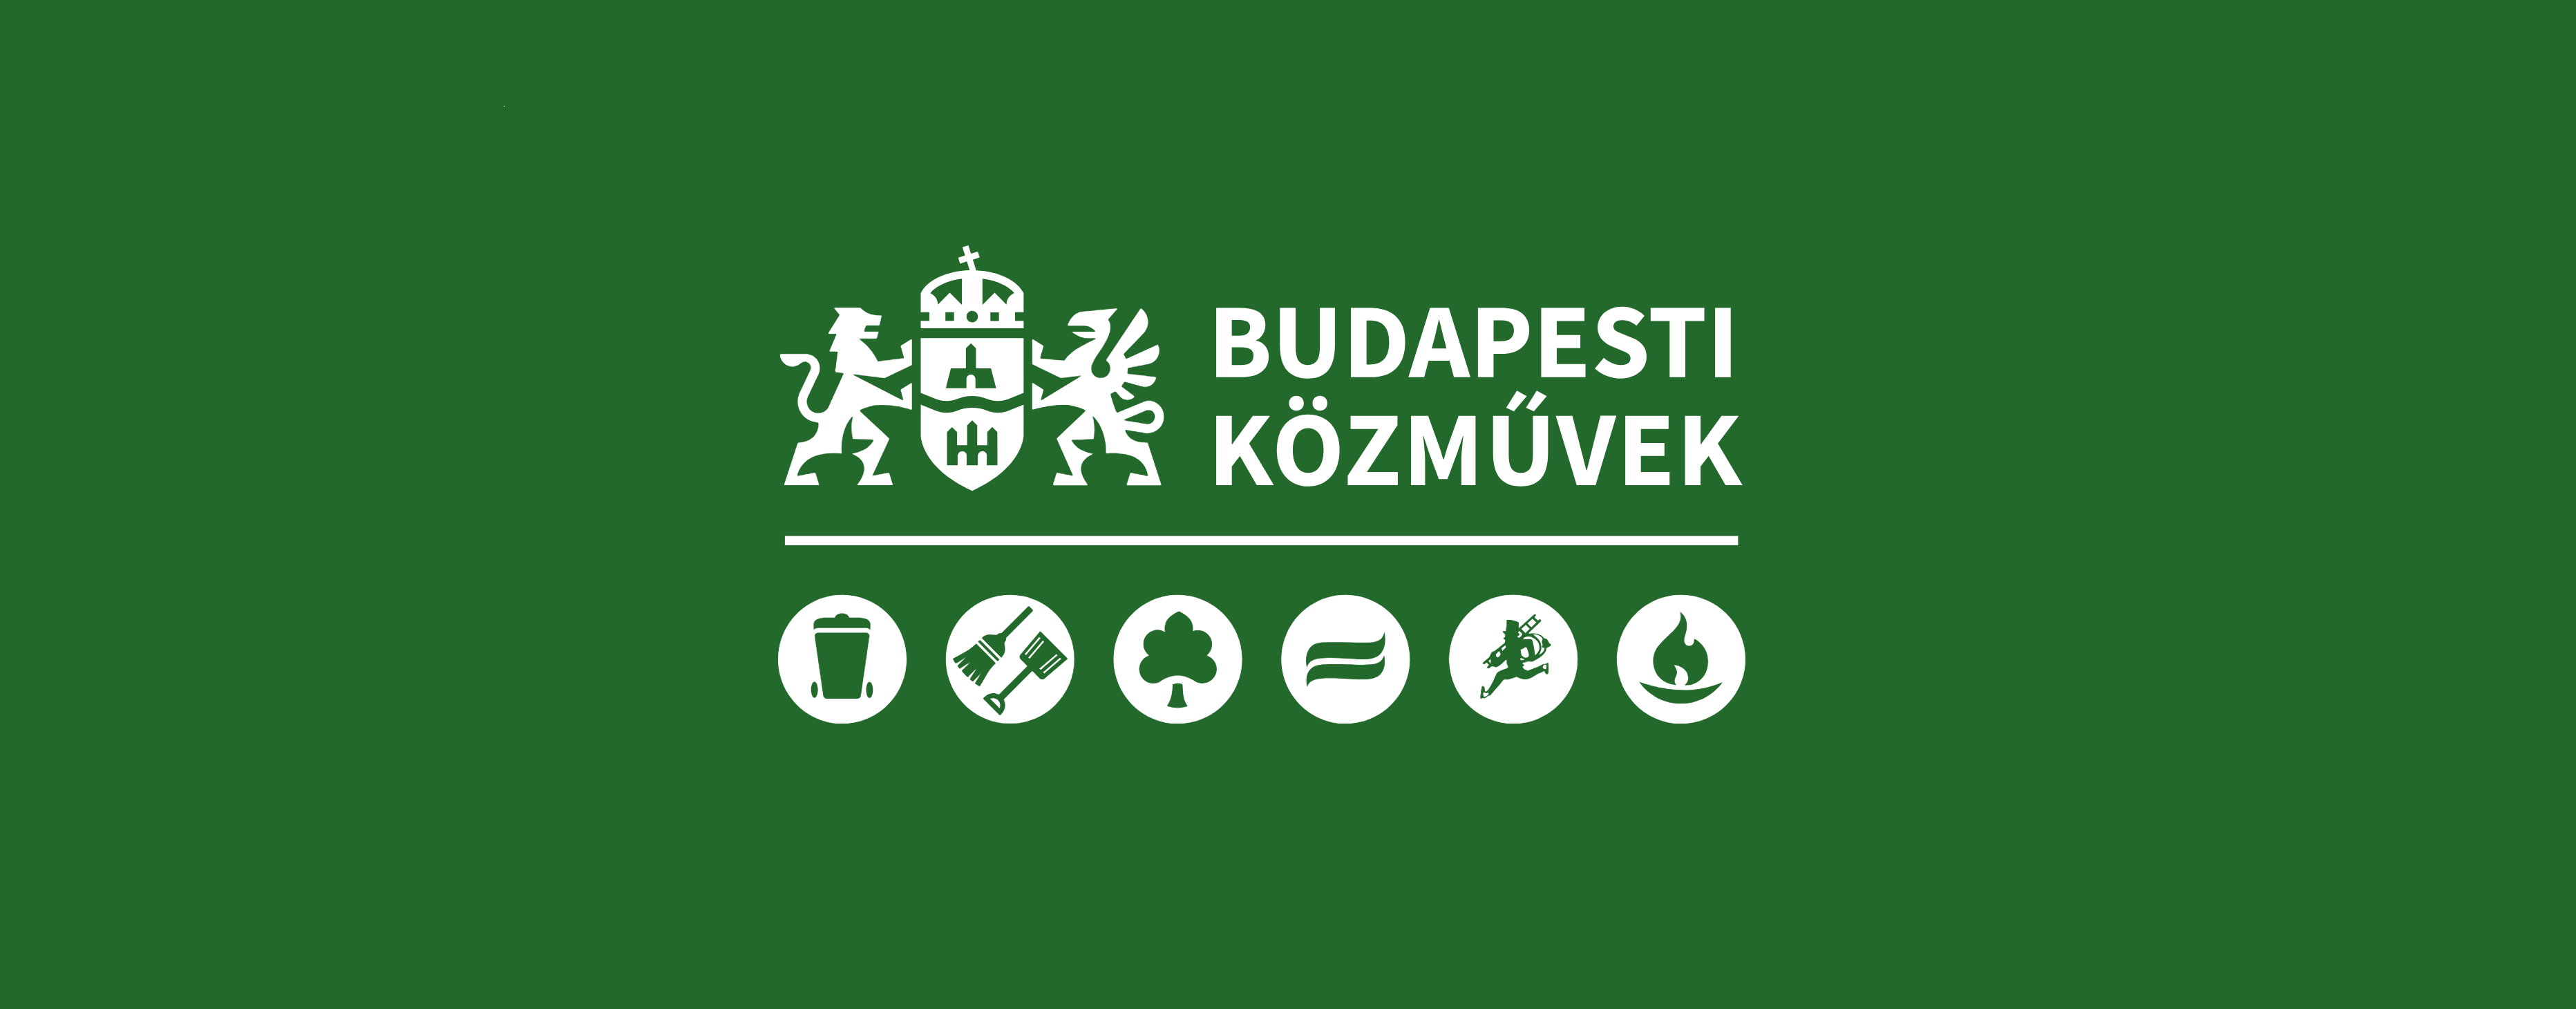 Budapesti Közművek weboldalainak megújítása, akadálymentesítése